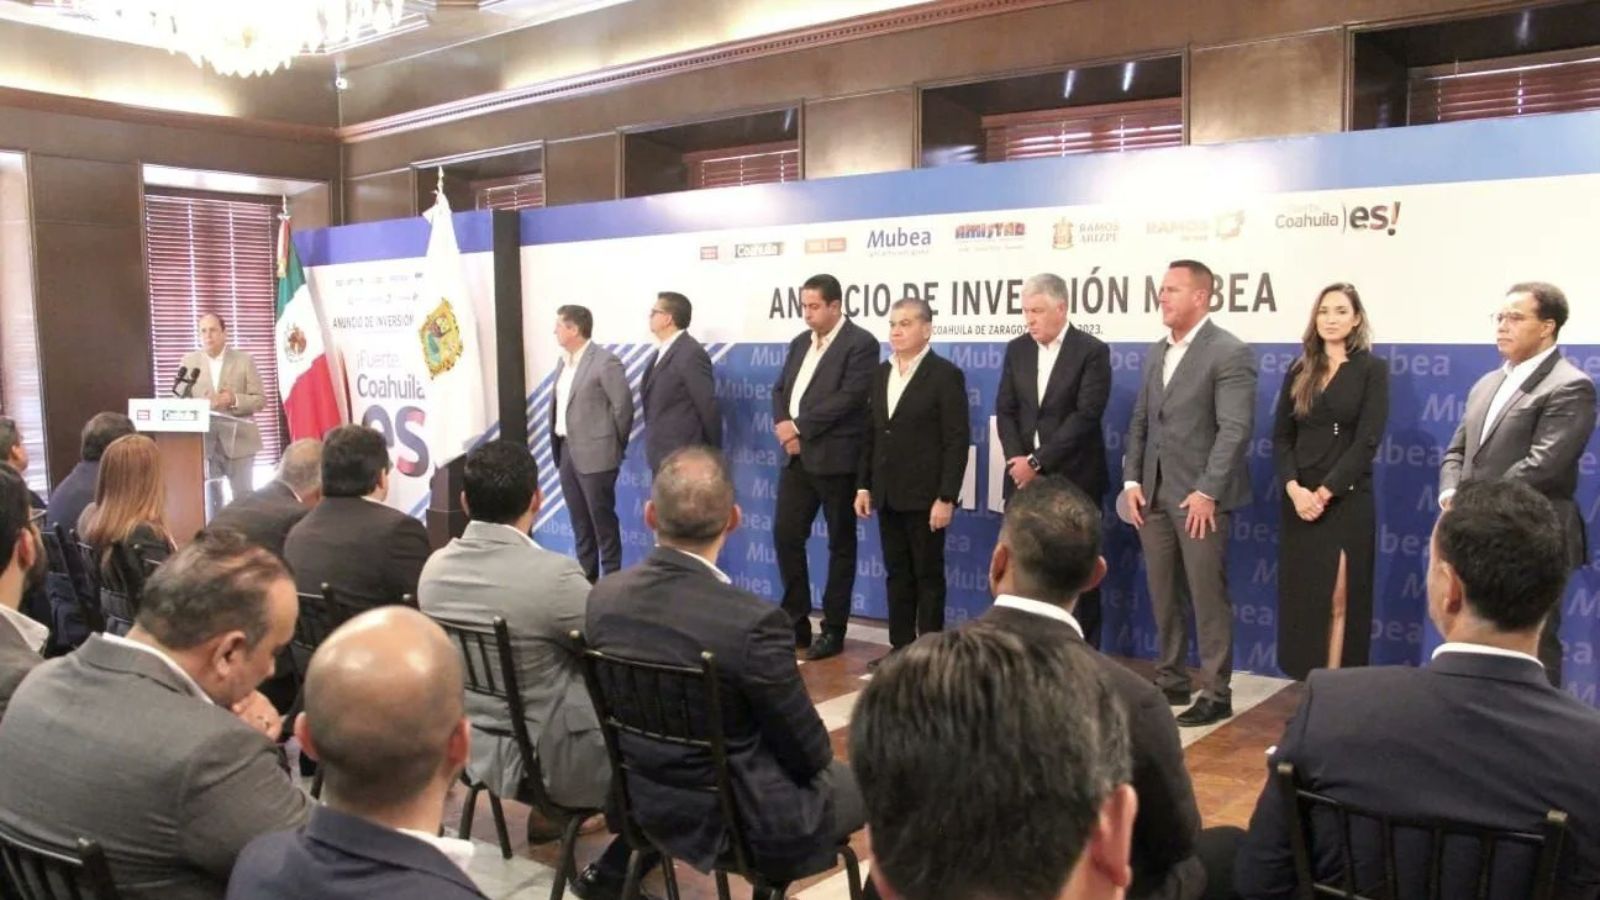 Mubea reafirma su confianza en Coahuila